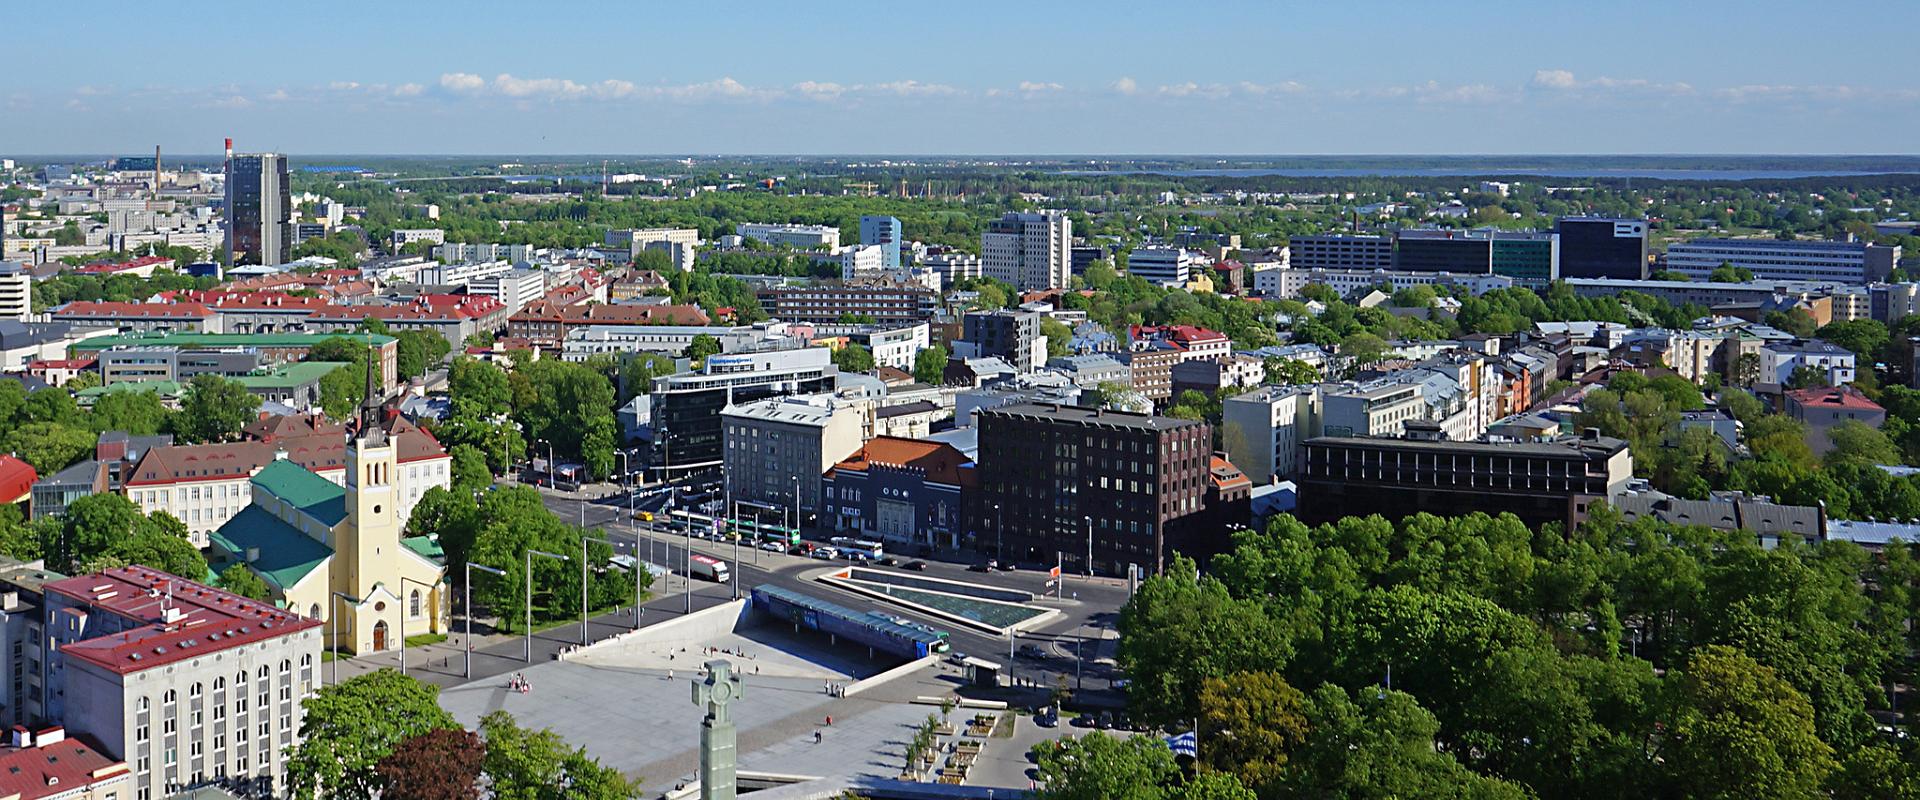 Der Freiheits-Platz und das Siegesmonument des Freiheitskriegs in Tallinn